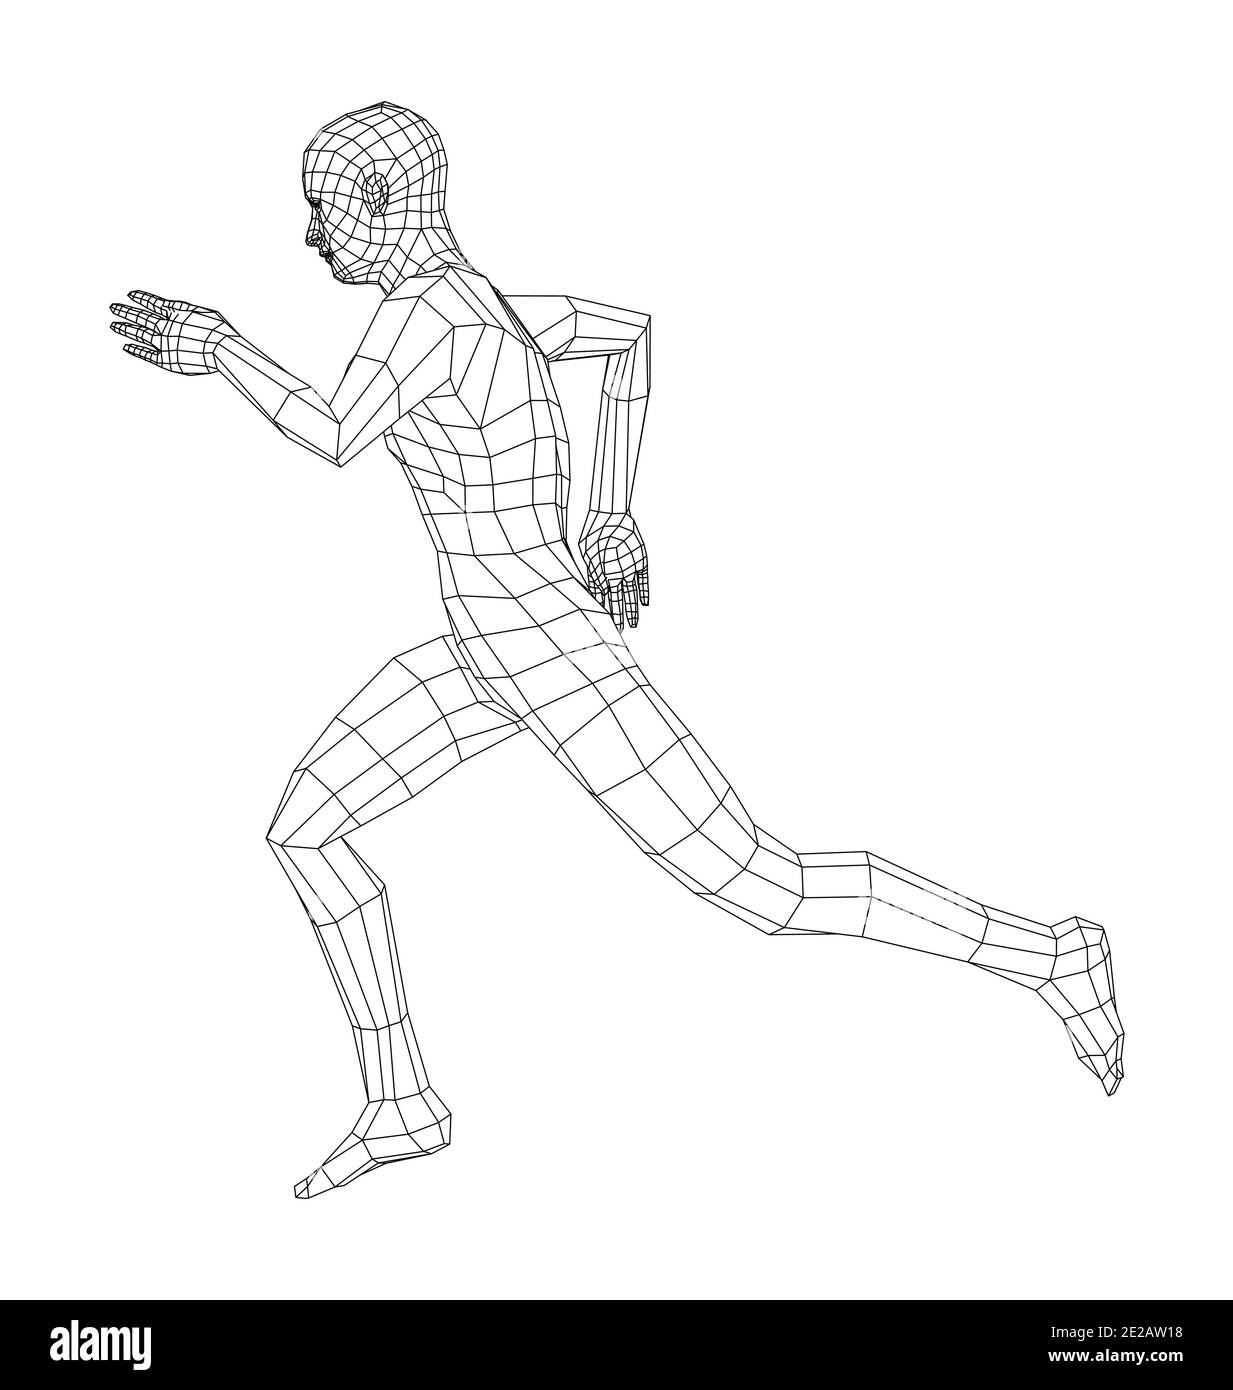 dynamic running pose